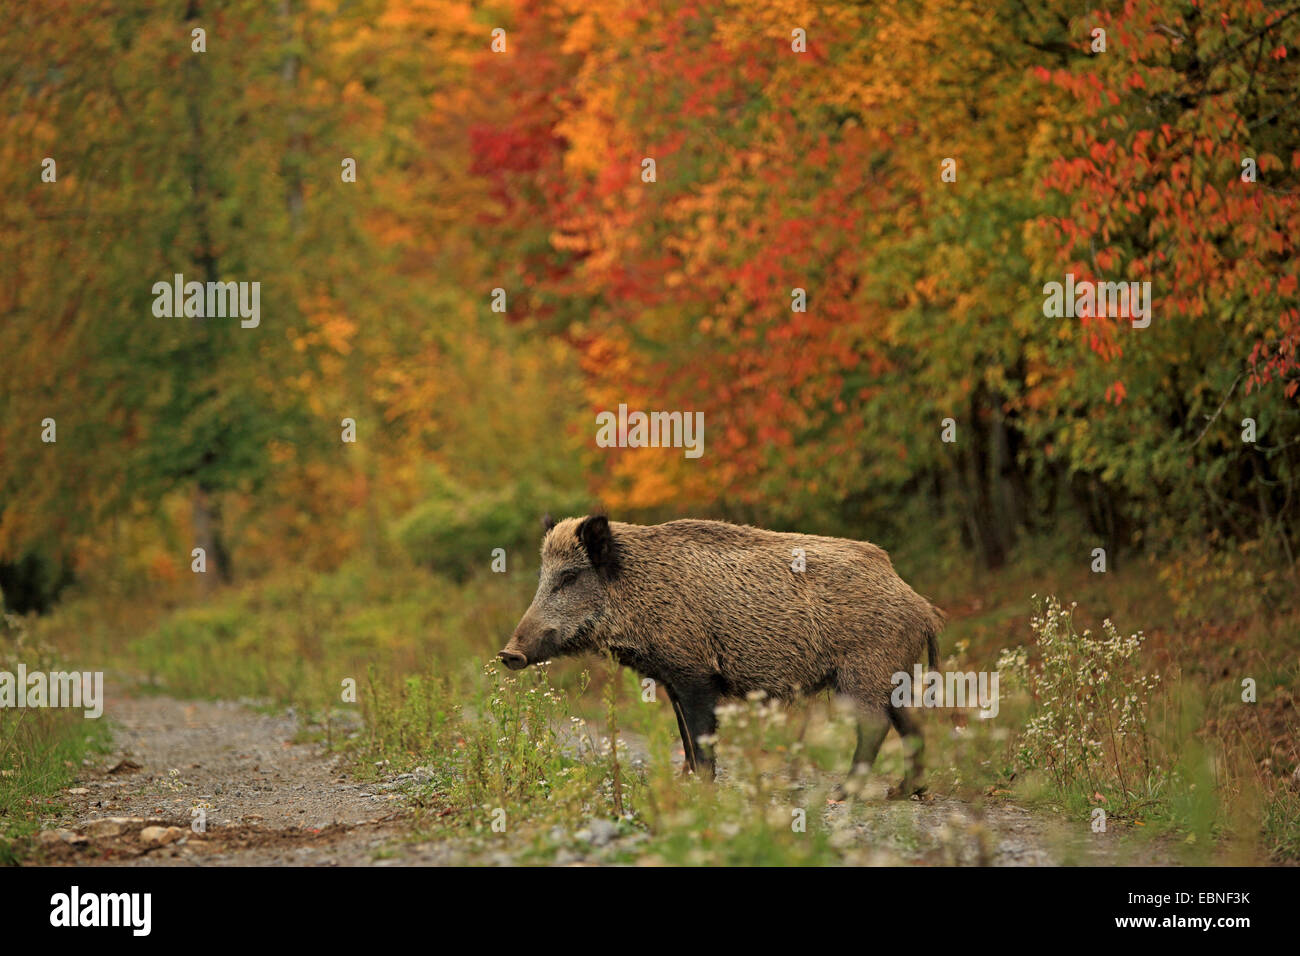 Le sanglier, le porc, le sanglier (Sus scrofa), sur un sentier de forêt en automne, l'Allemagne, Bade-Wurtemberg Banque D'Images